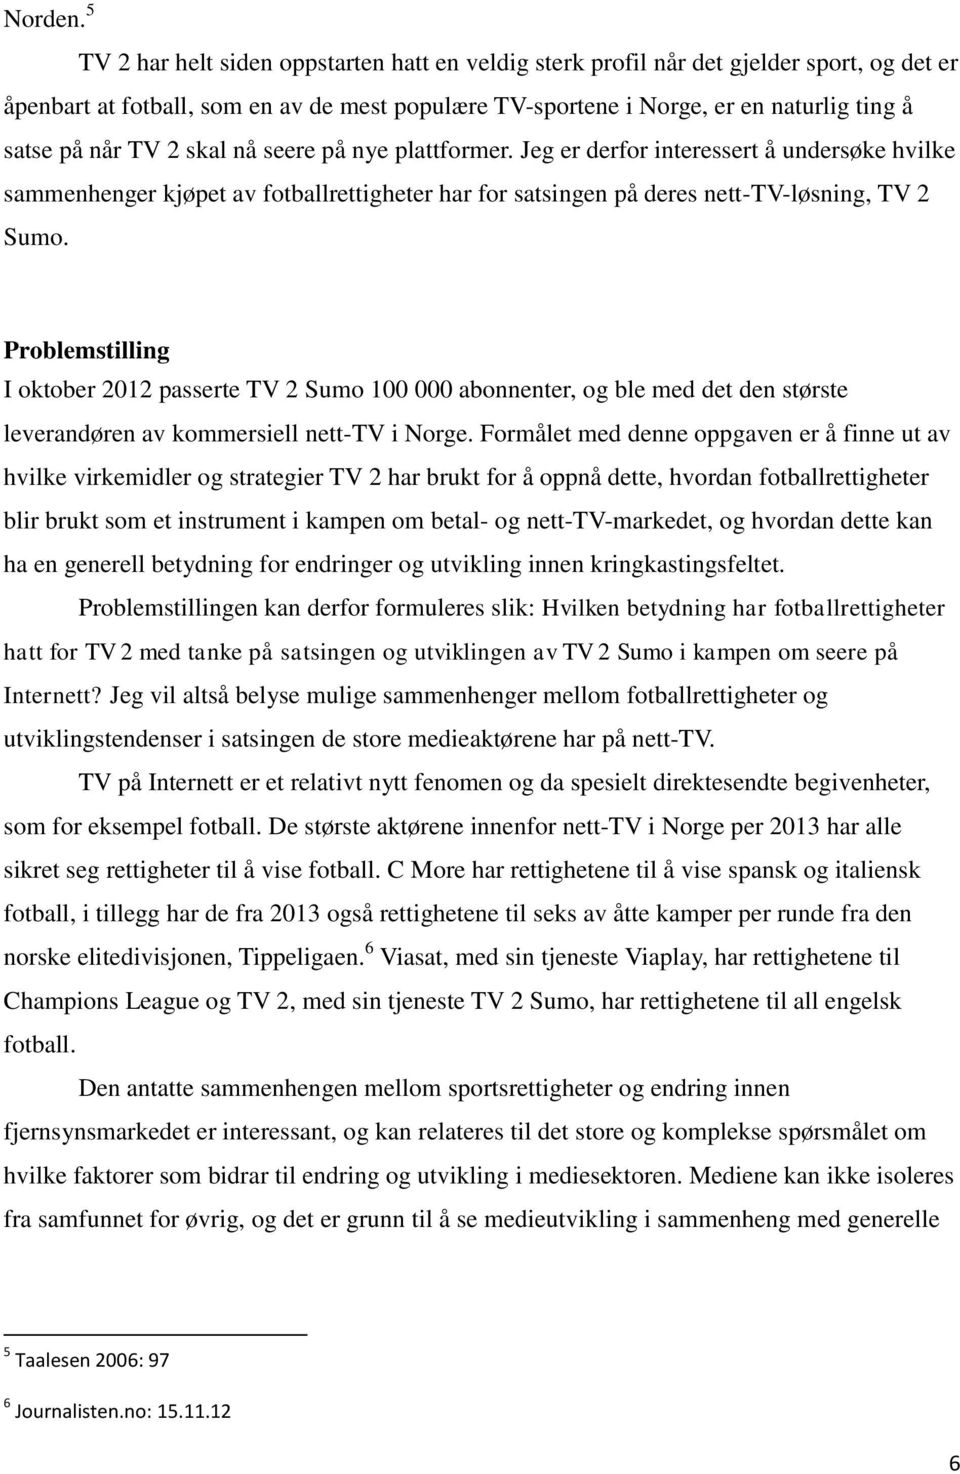 TV 2 skal nå seere på nye plattformer. Jeg er derfor interessert å undersøke hvilke sammenhenger kjøpet av fotballrettigheter har for satsingen på deres nett-tv-løsning, TV 2 Sumo.